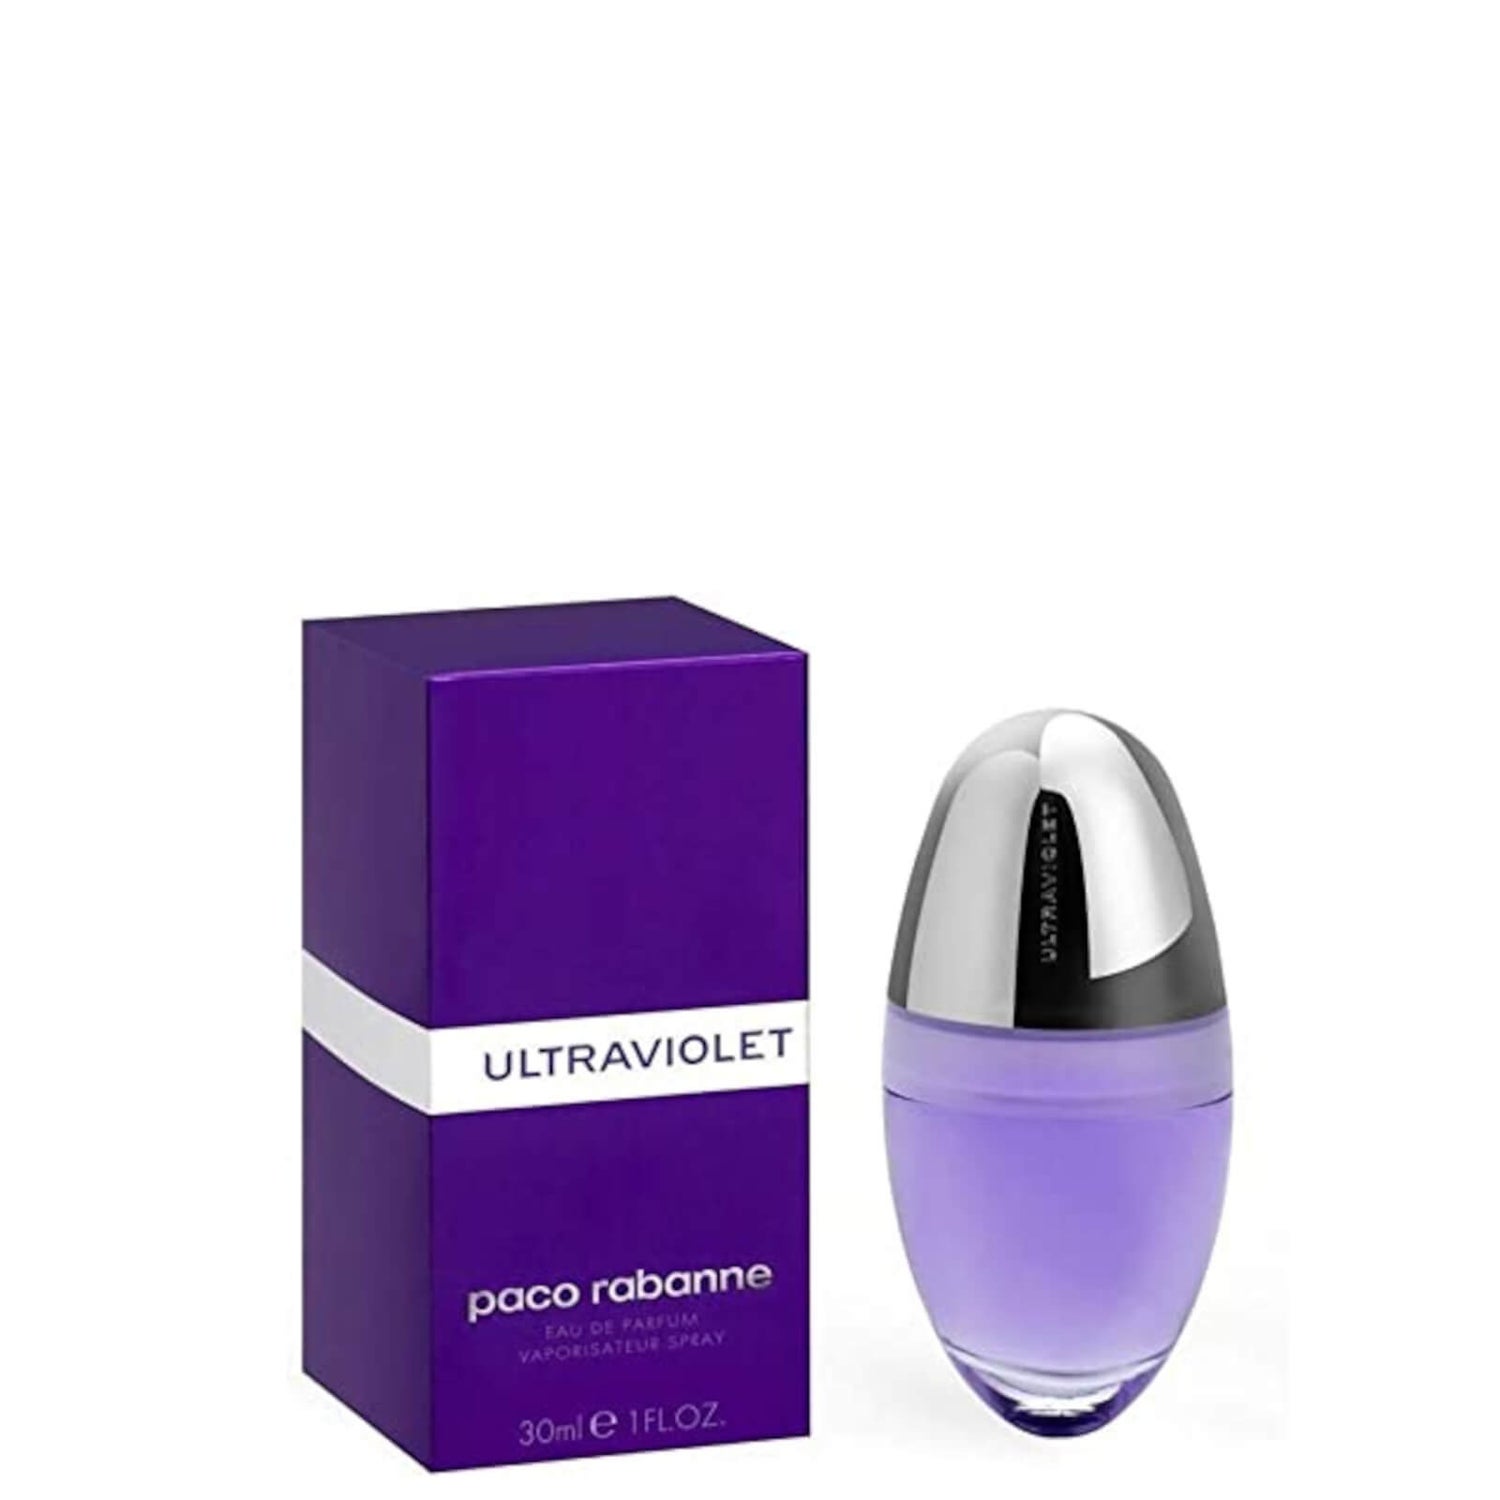 Paco Rabanne Ultraviolet for Her eau de parfum (30ml)